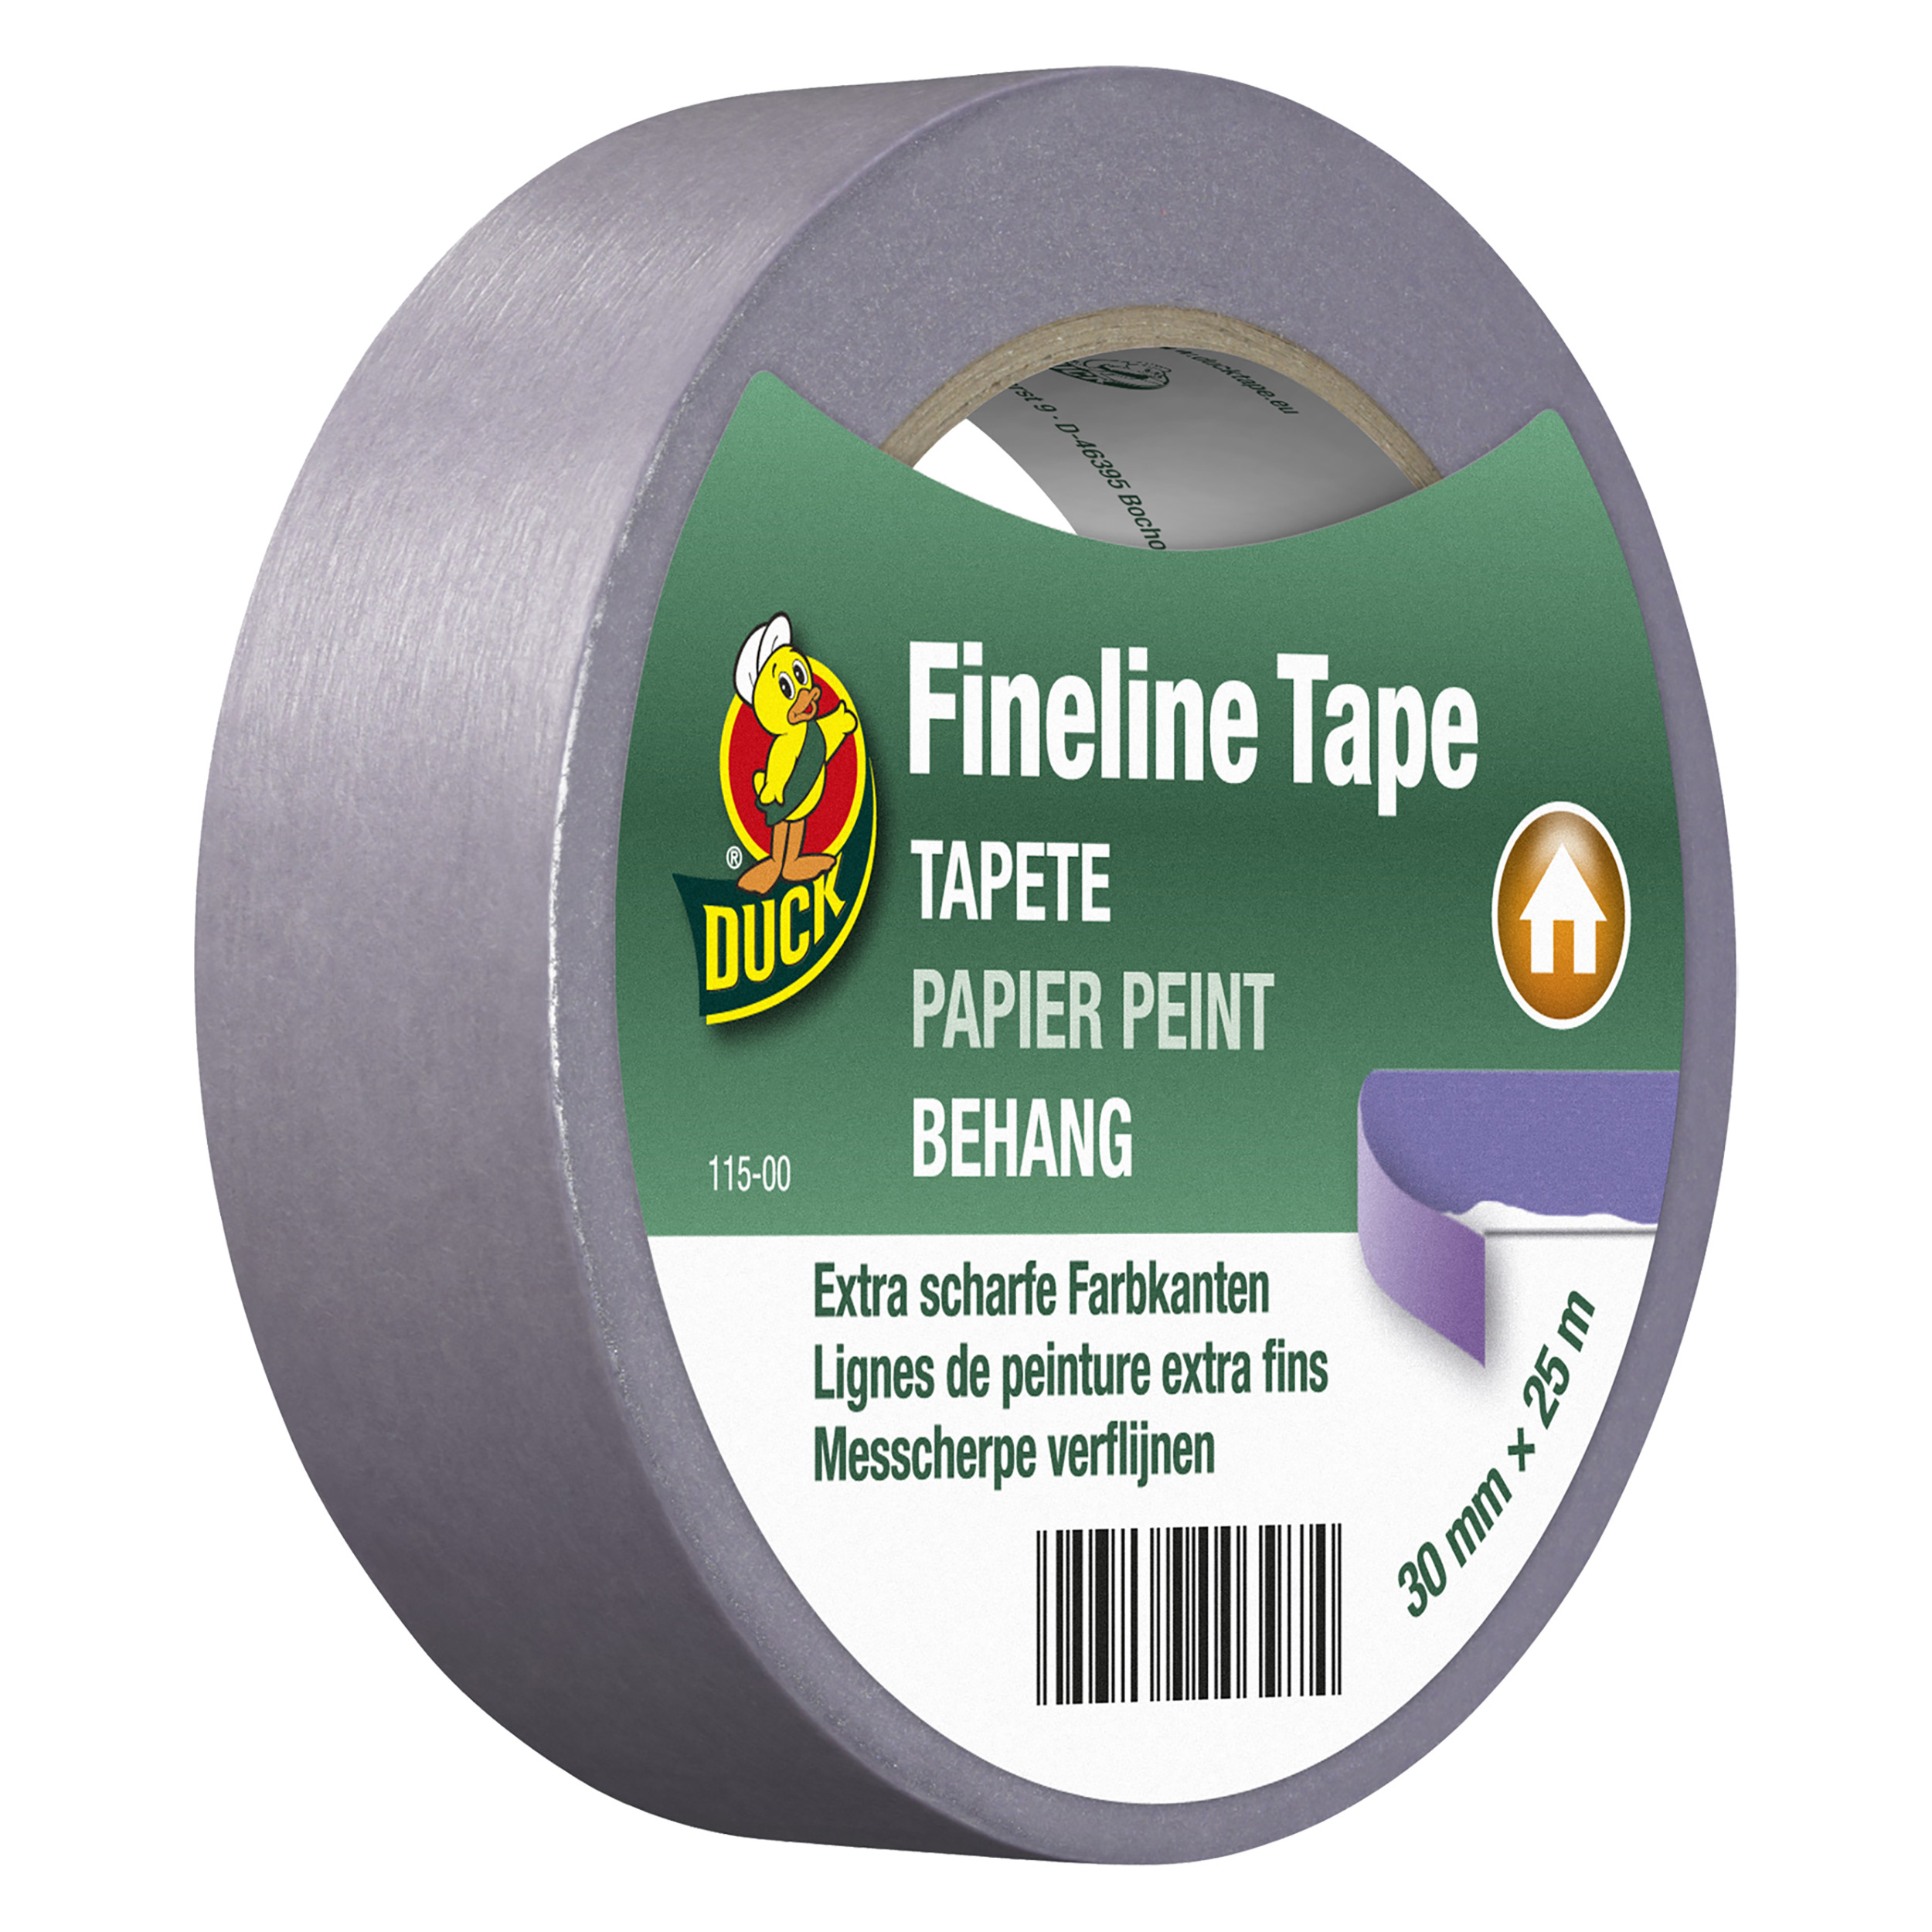 Fineline tape behang